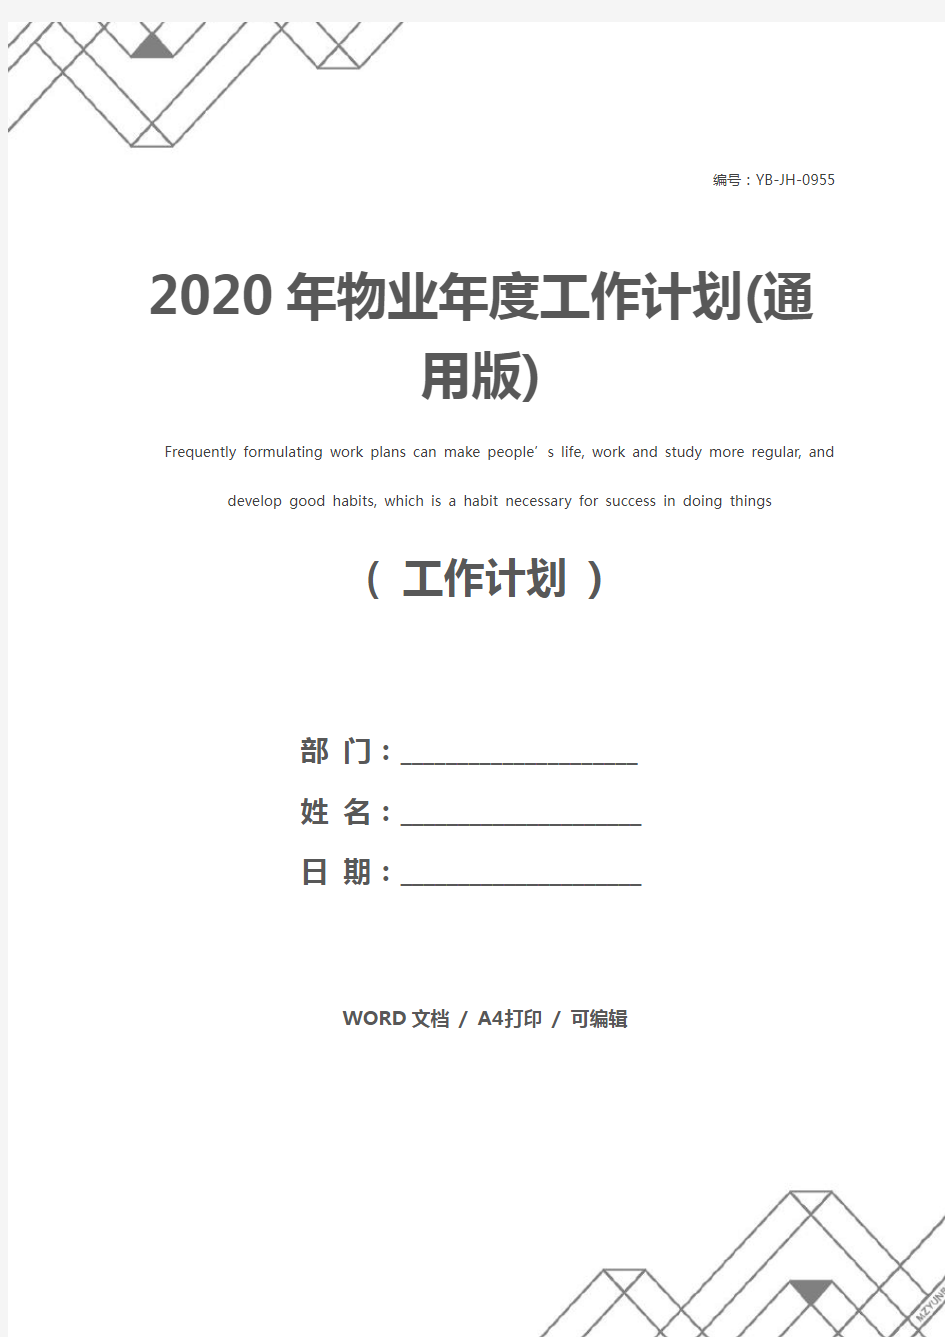 2020年物业年度工作计划(通用版)